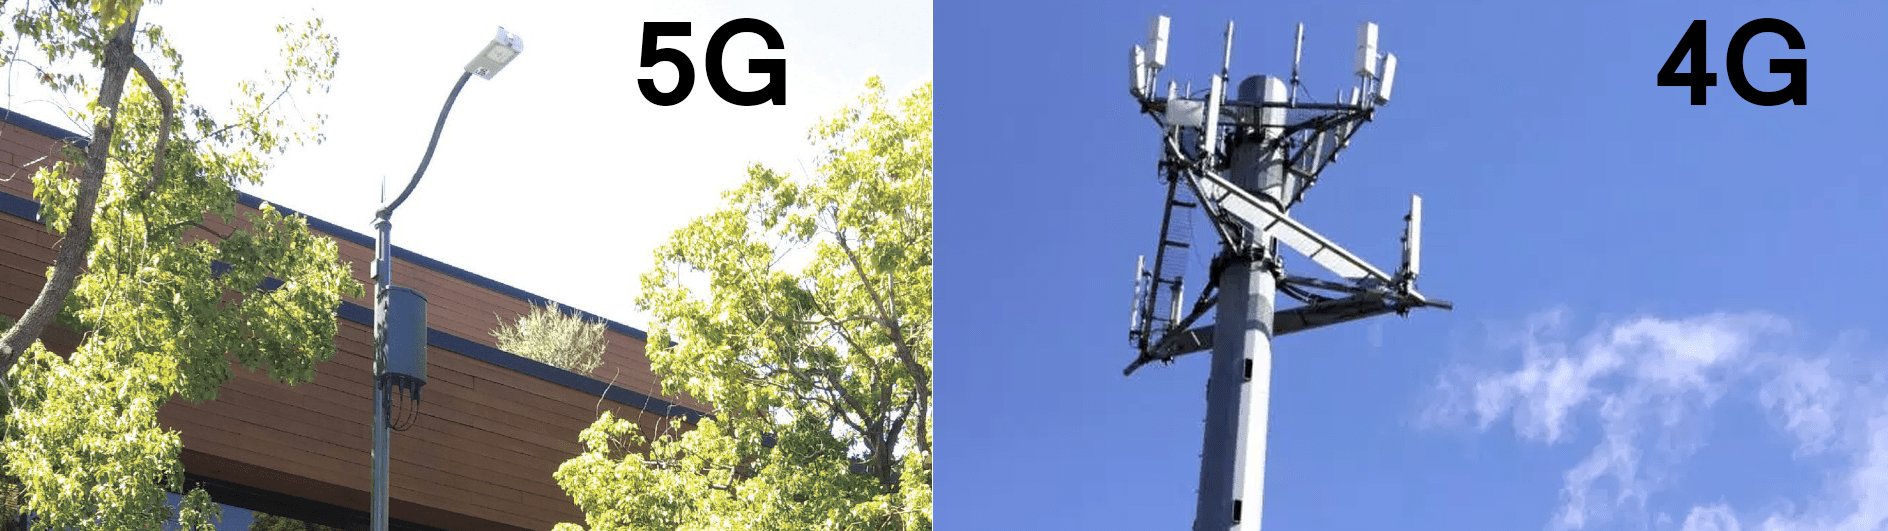 5G vs 4G celltorn